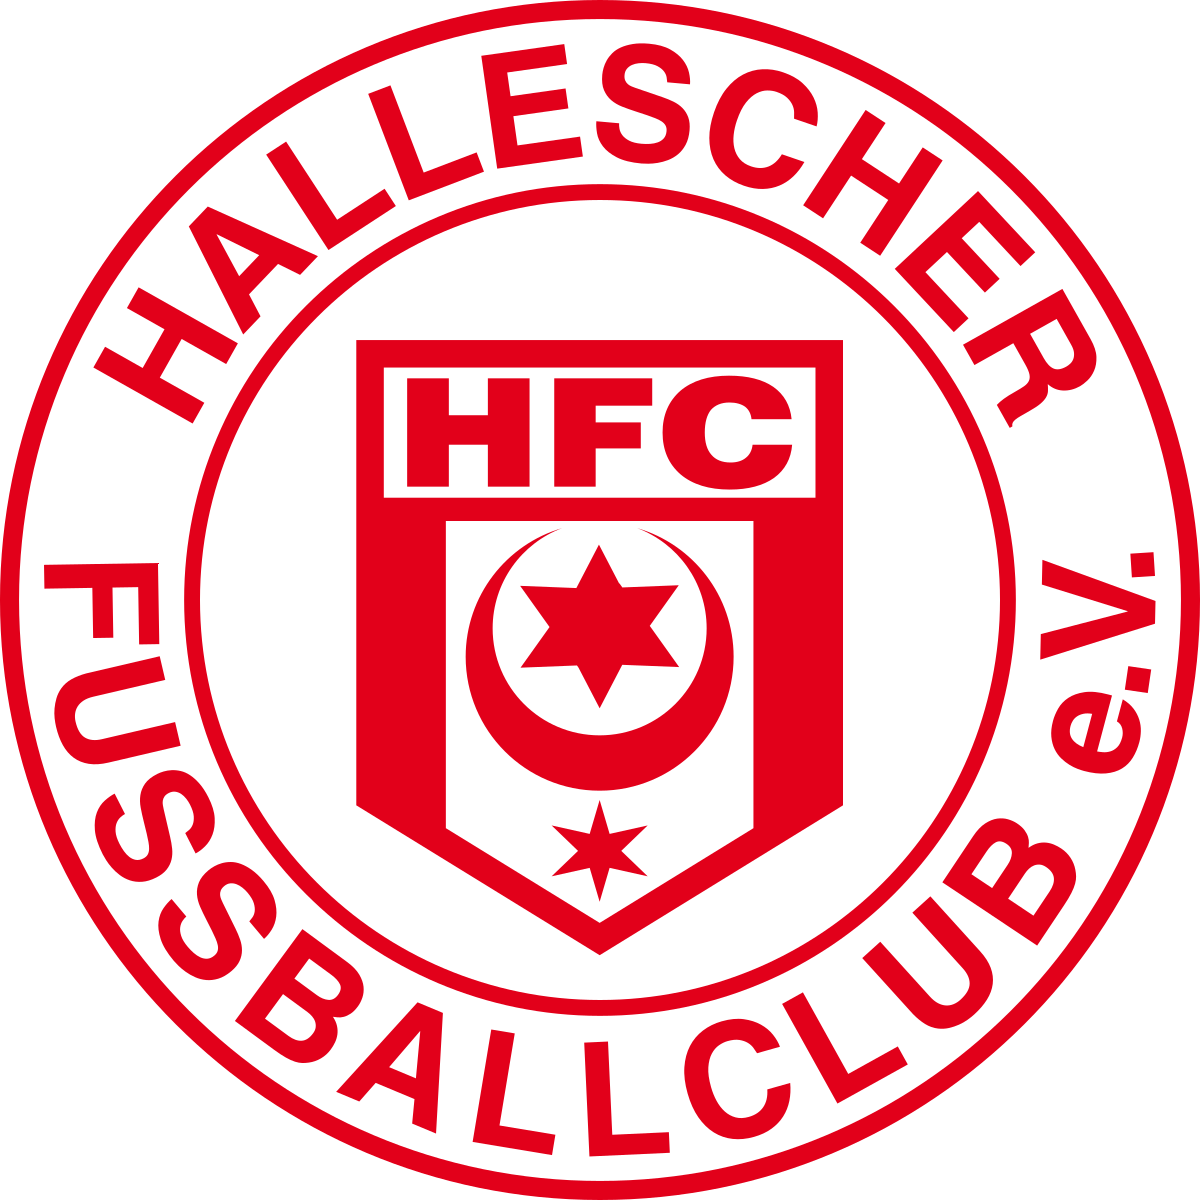 Hallescher U-19 logo